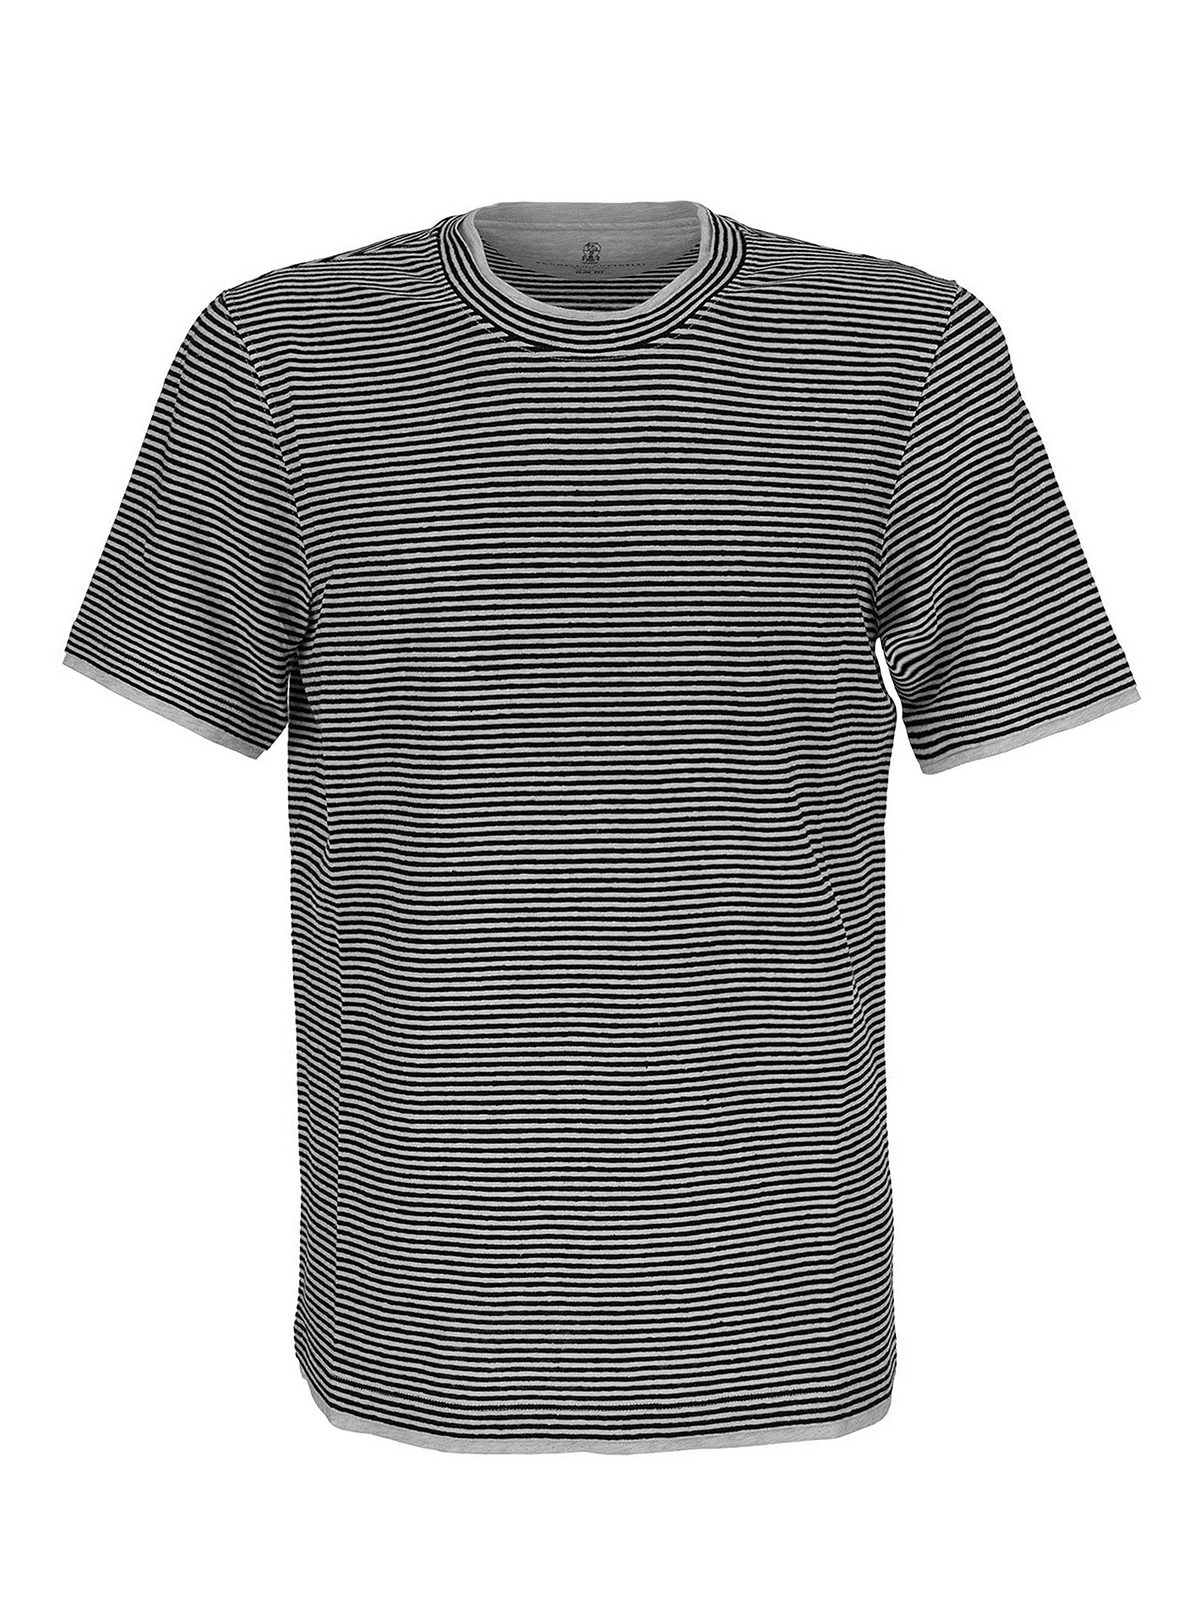 T-shirts Brunello Cucinelli - Striped T-shirt - MTS687427CC010 | iKRIX.com